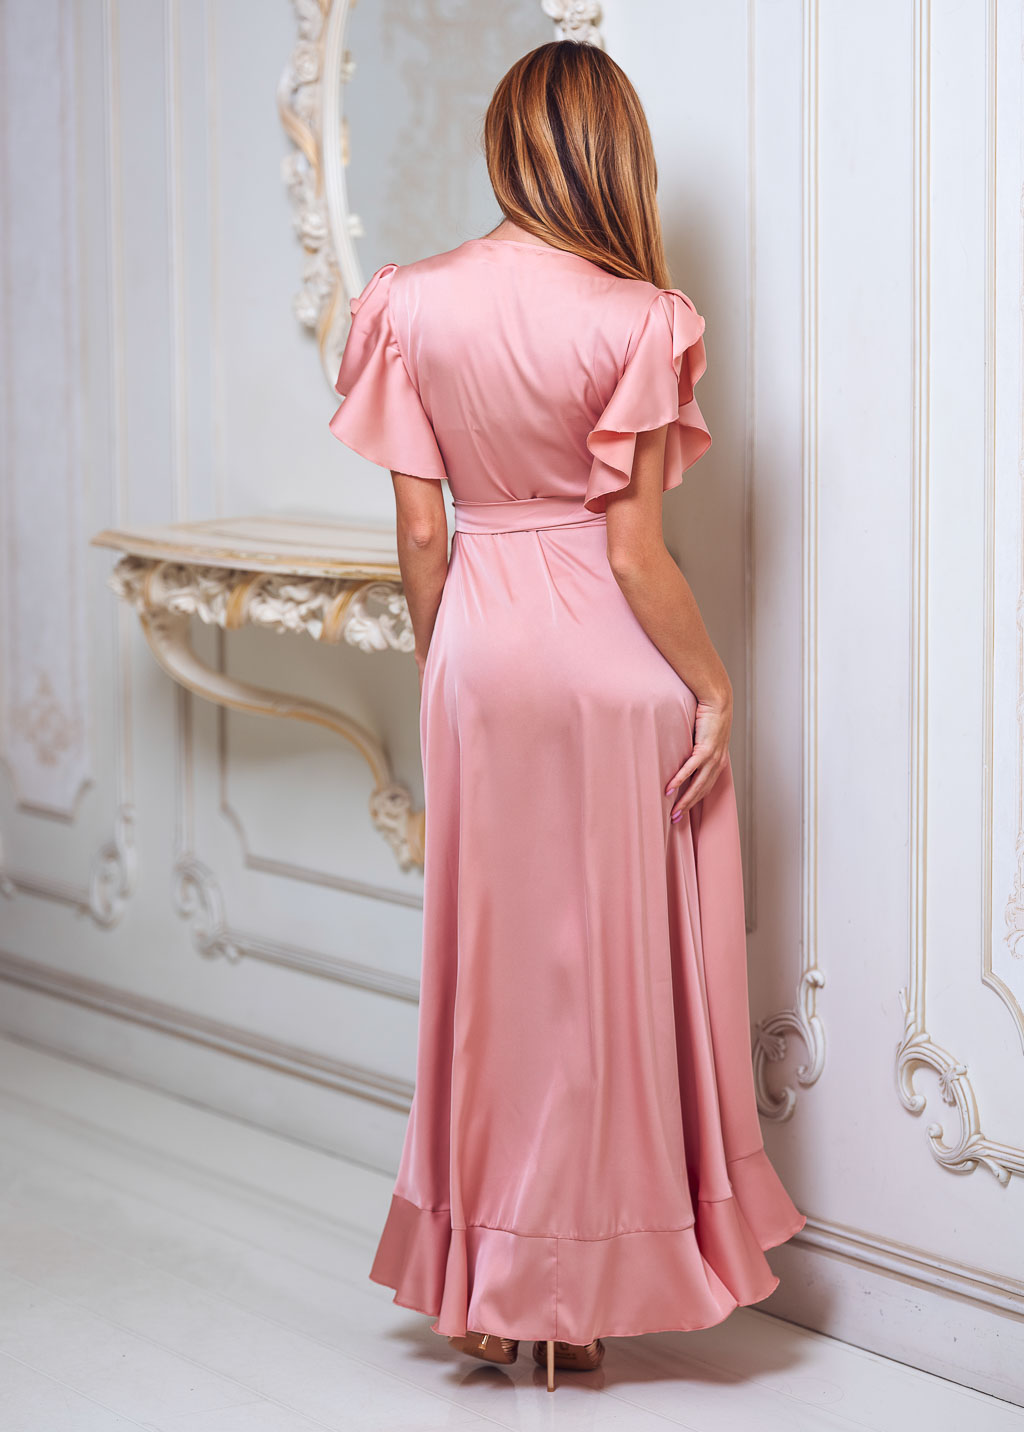 Blush pink wrap dress